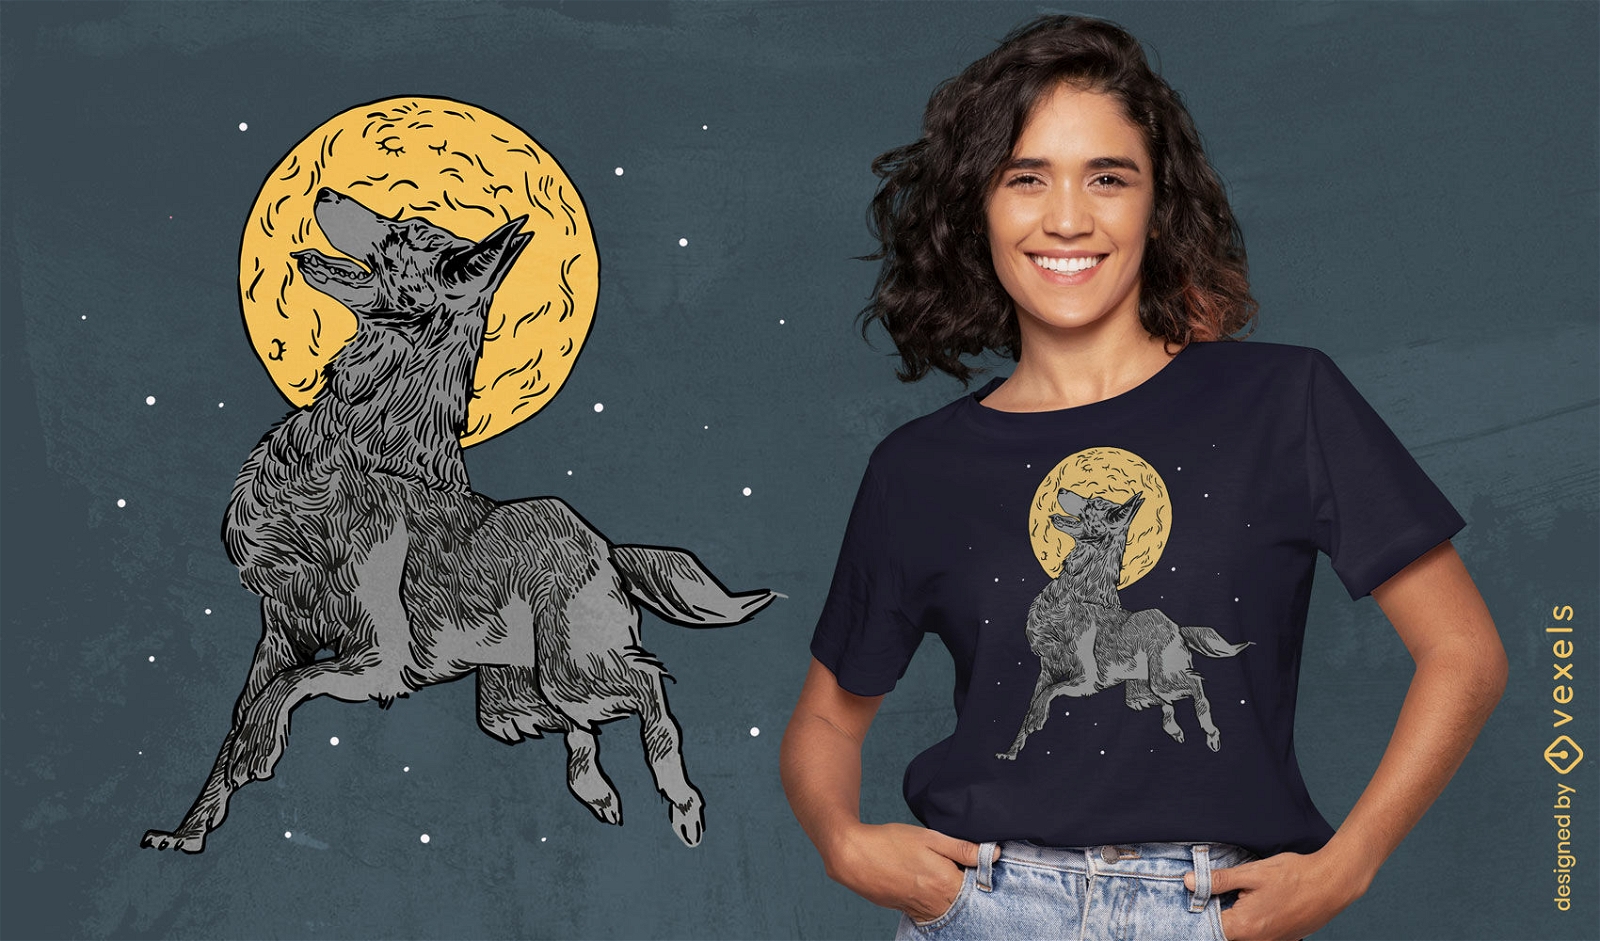 Howling wolf full moon t-shirt design